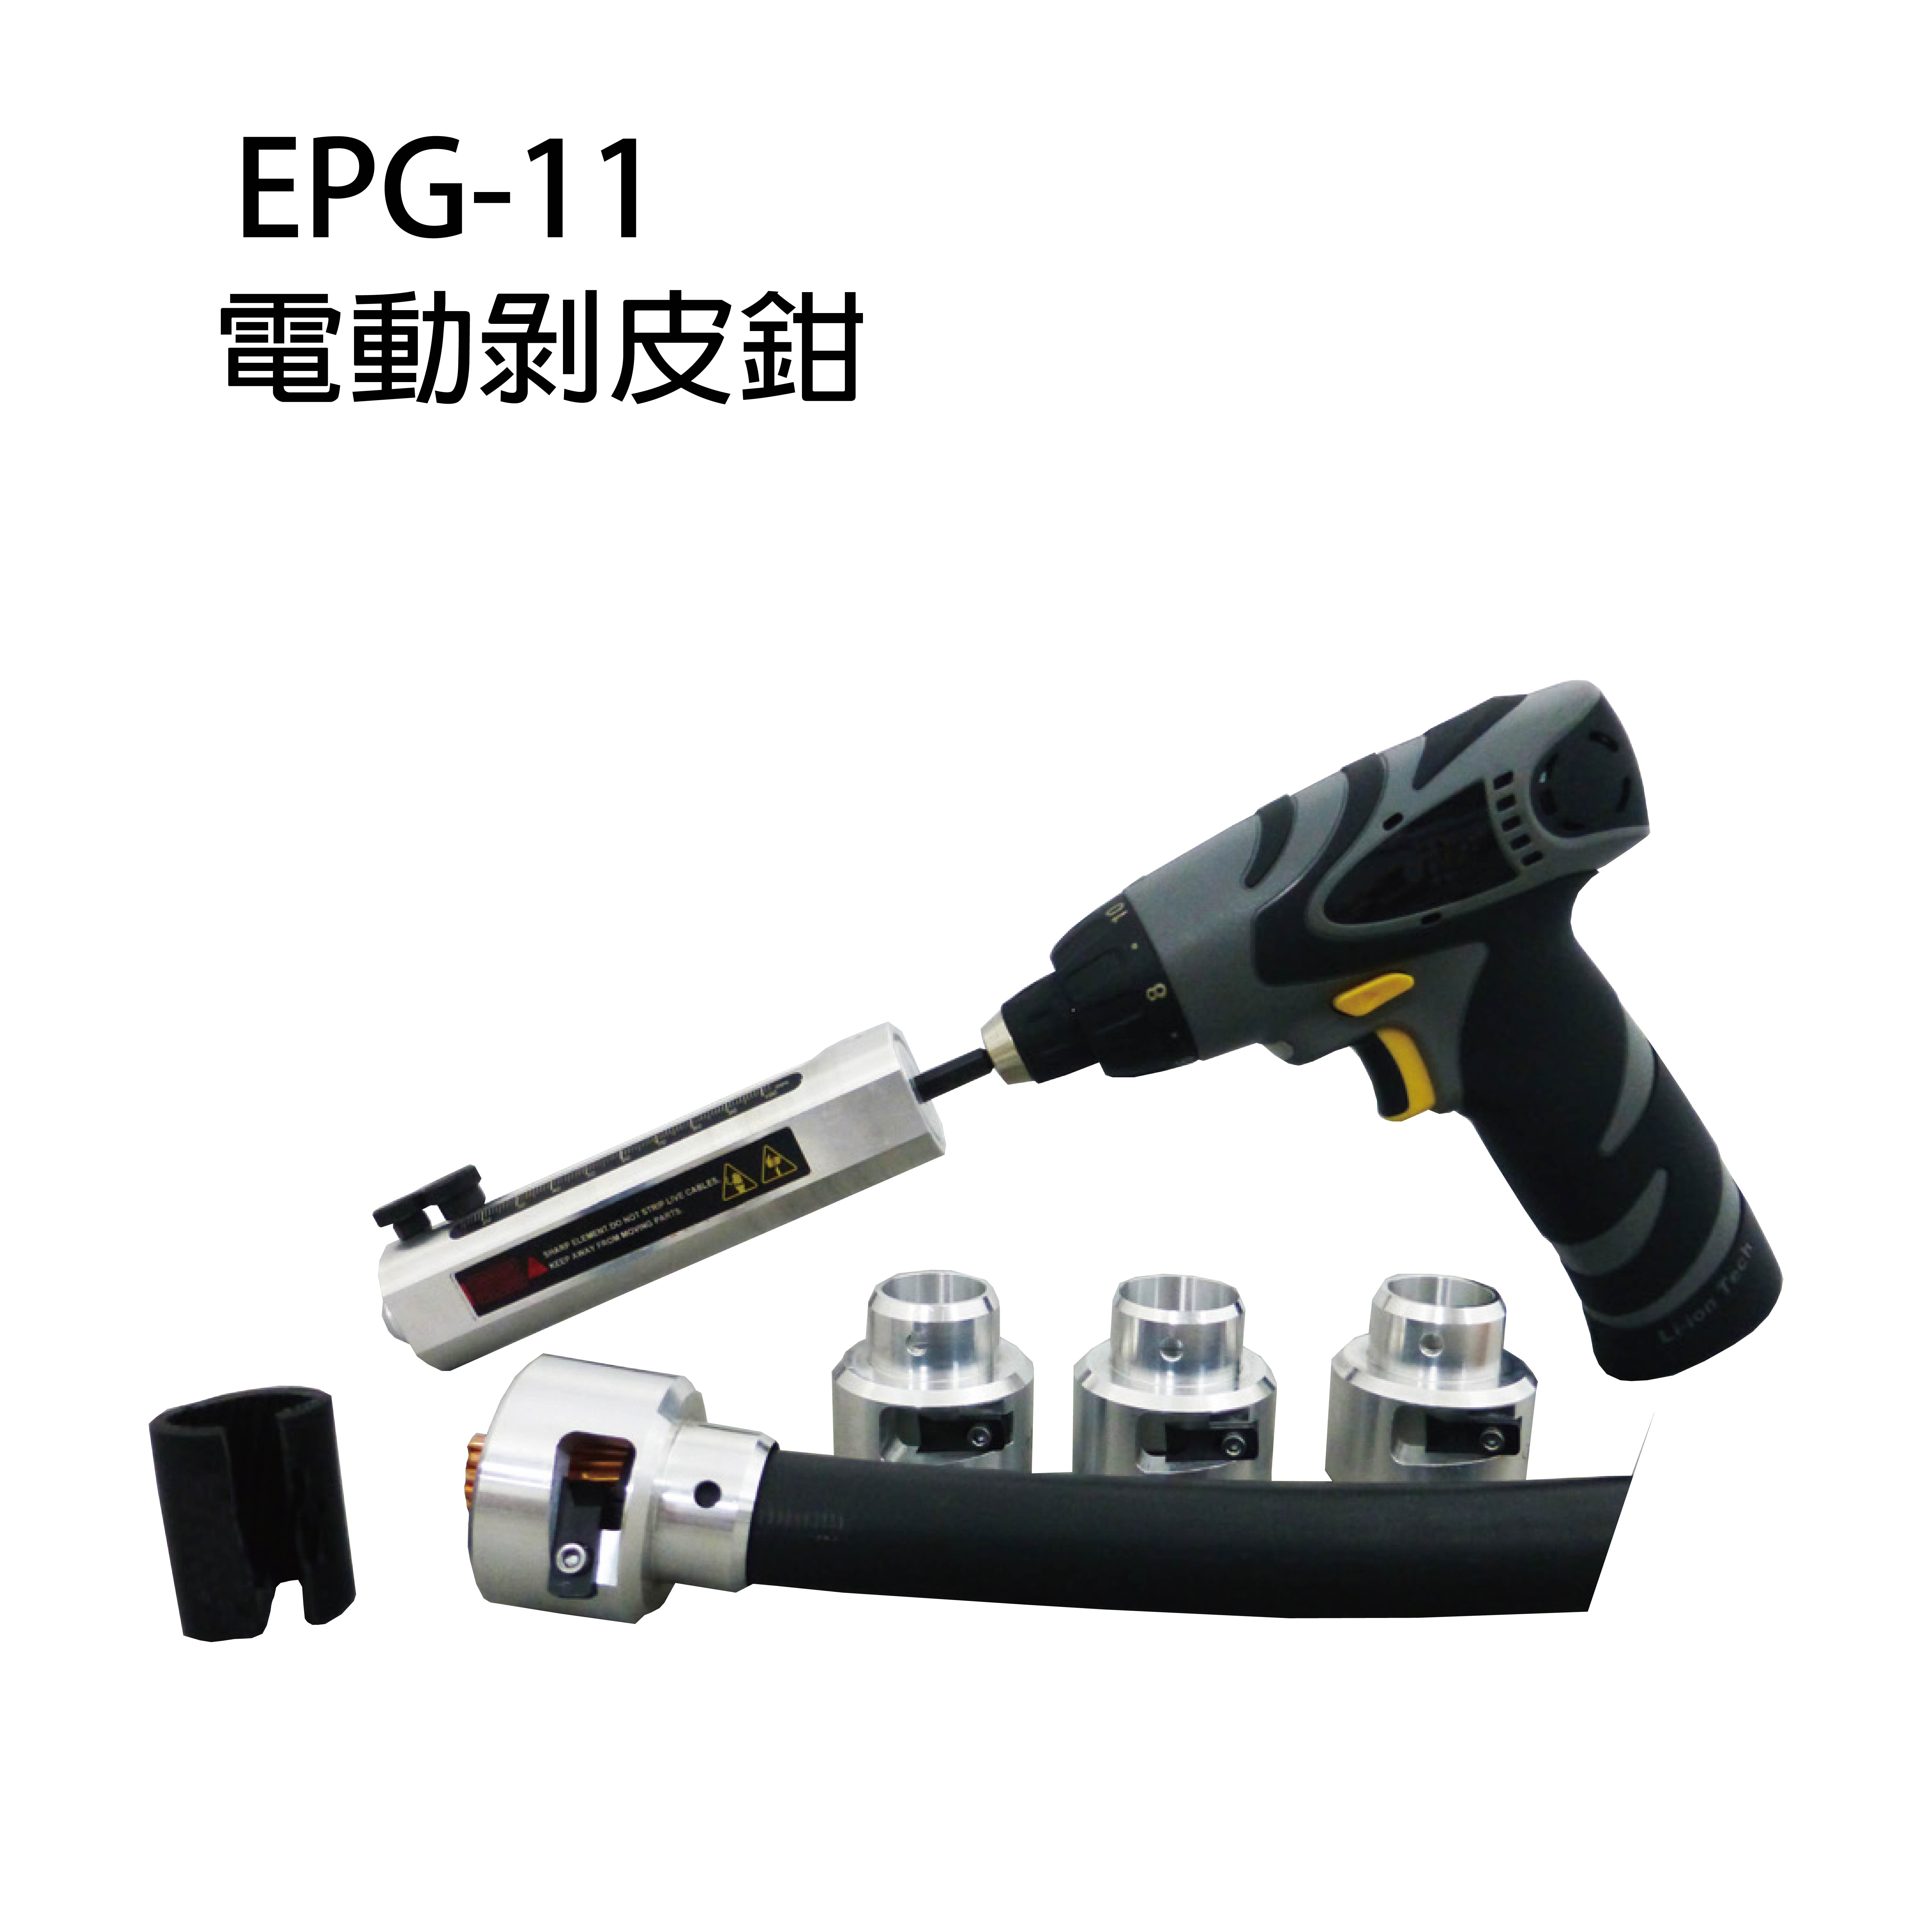 EPG-11, EPG-11S, EPG-11B CORDLESS-DRILL-DRIVING CABLE STRIPPERS-EPG-11, EPG-11S, EPG-11B